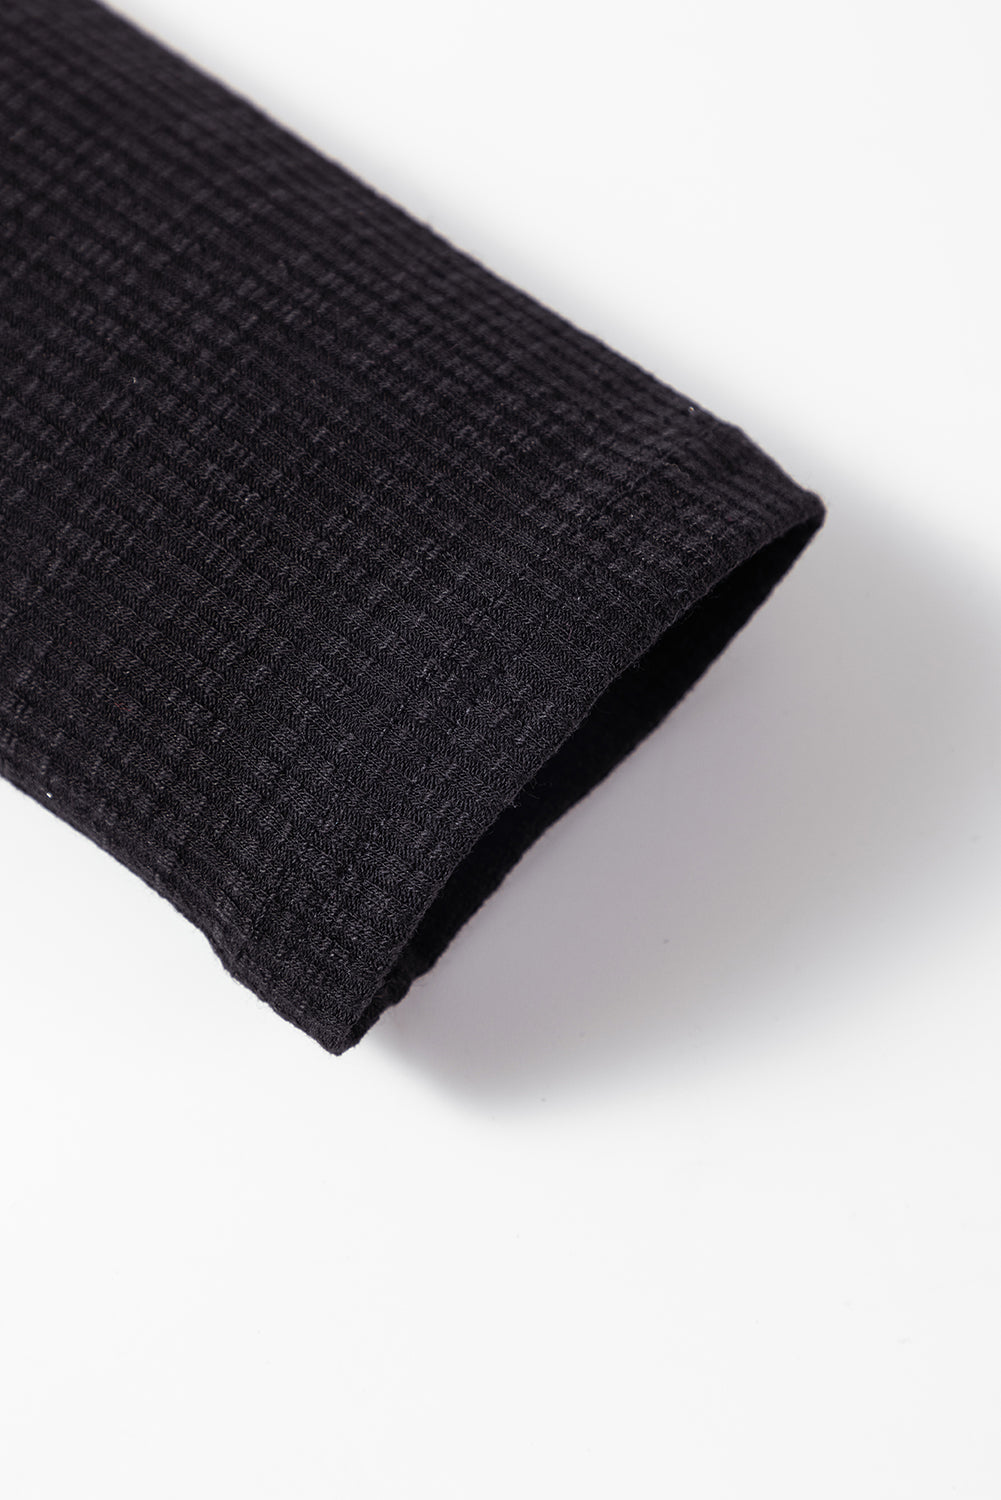 Črna rebrasta majica z dolgimi rokavi in ​​pletenimi gumbi